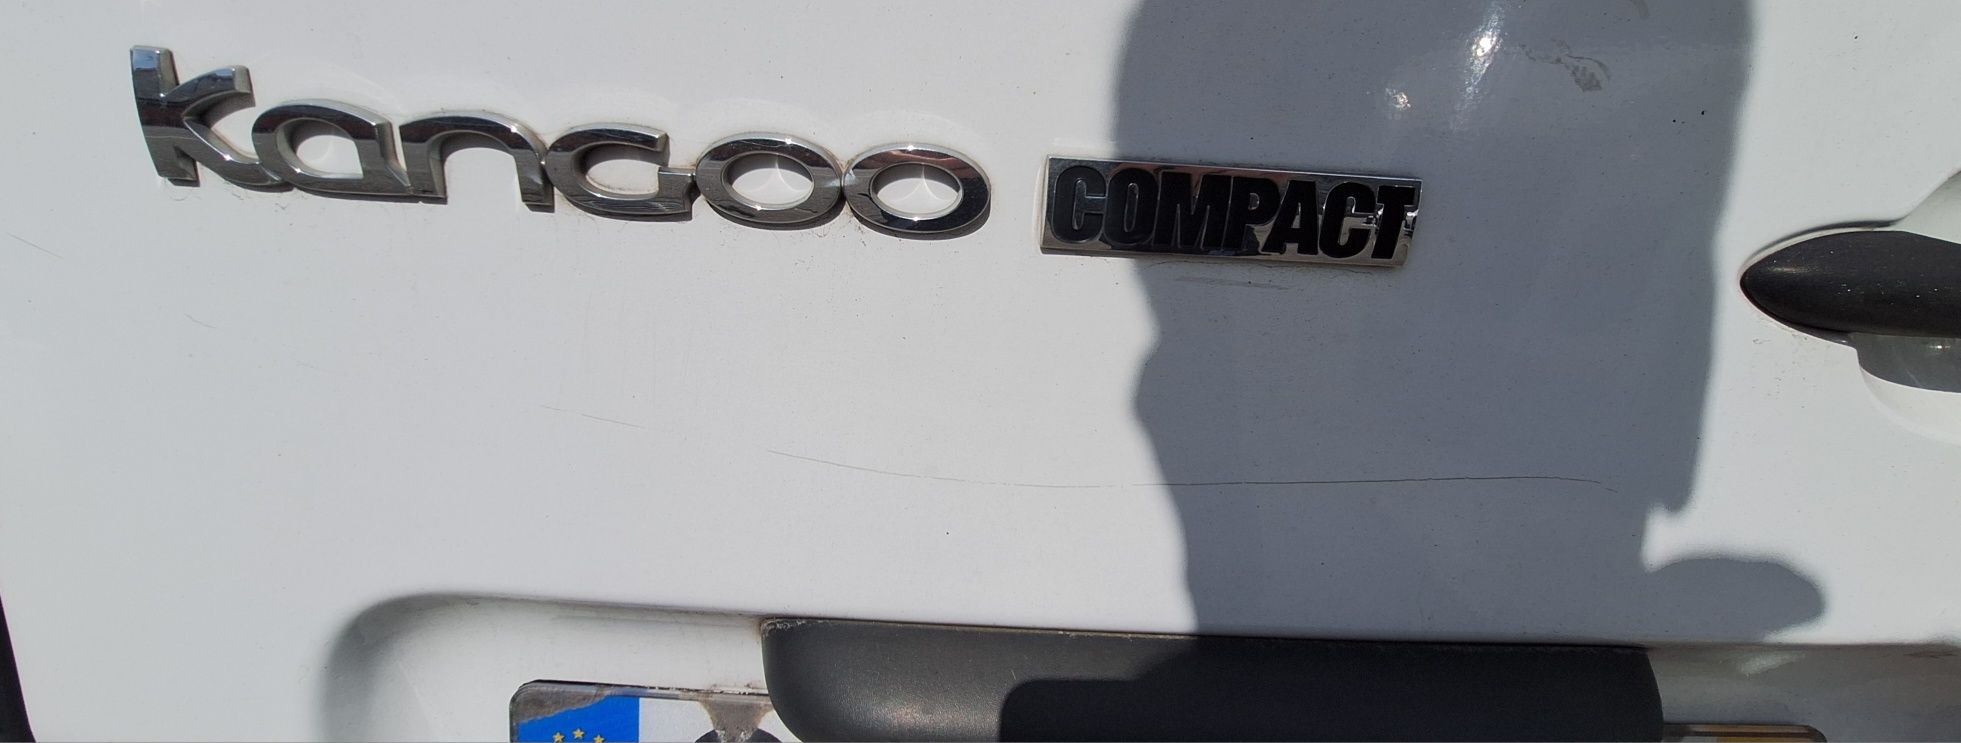 Renault Kangoo Compact 1.5 Dci 2014